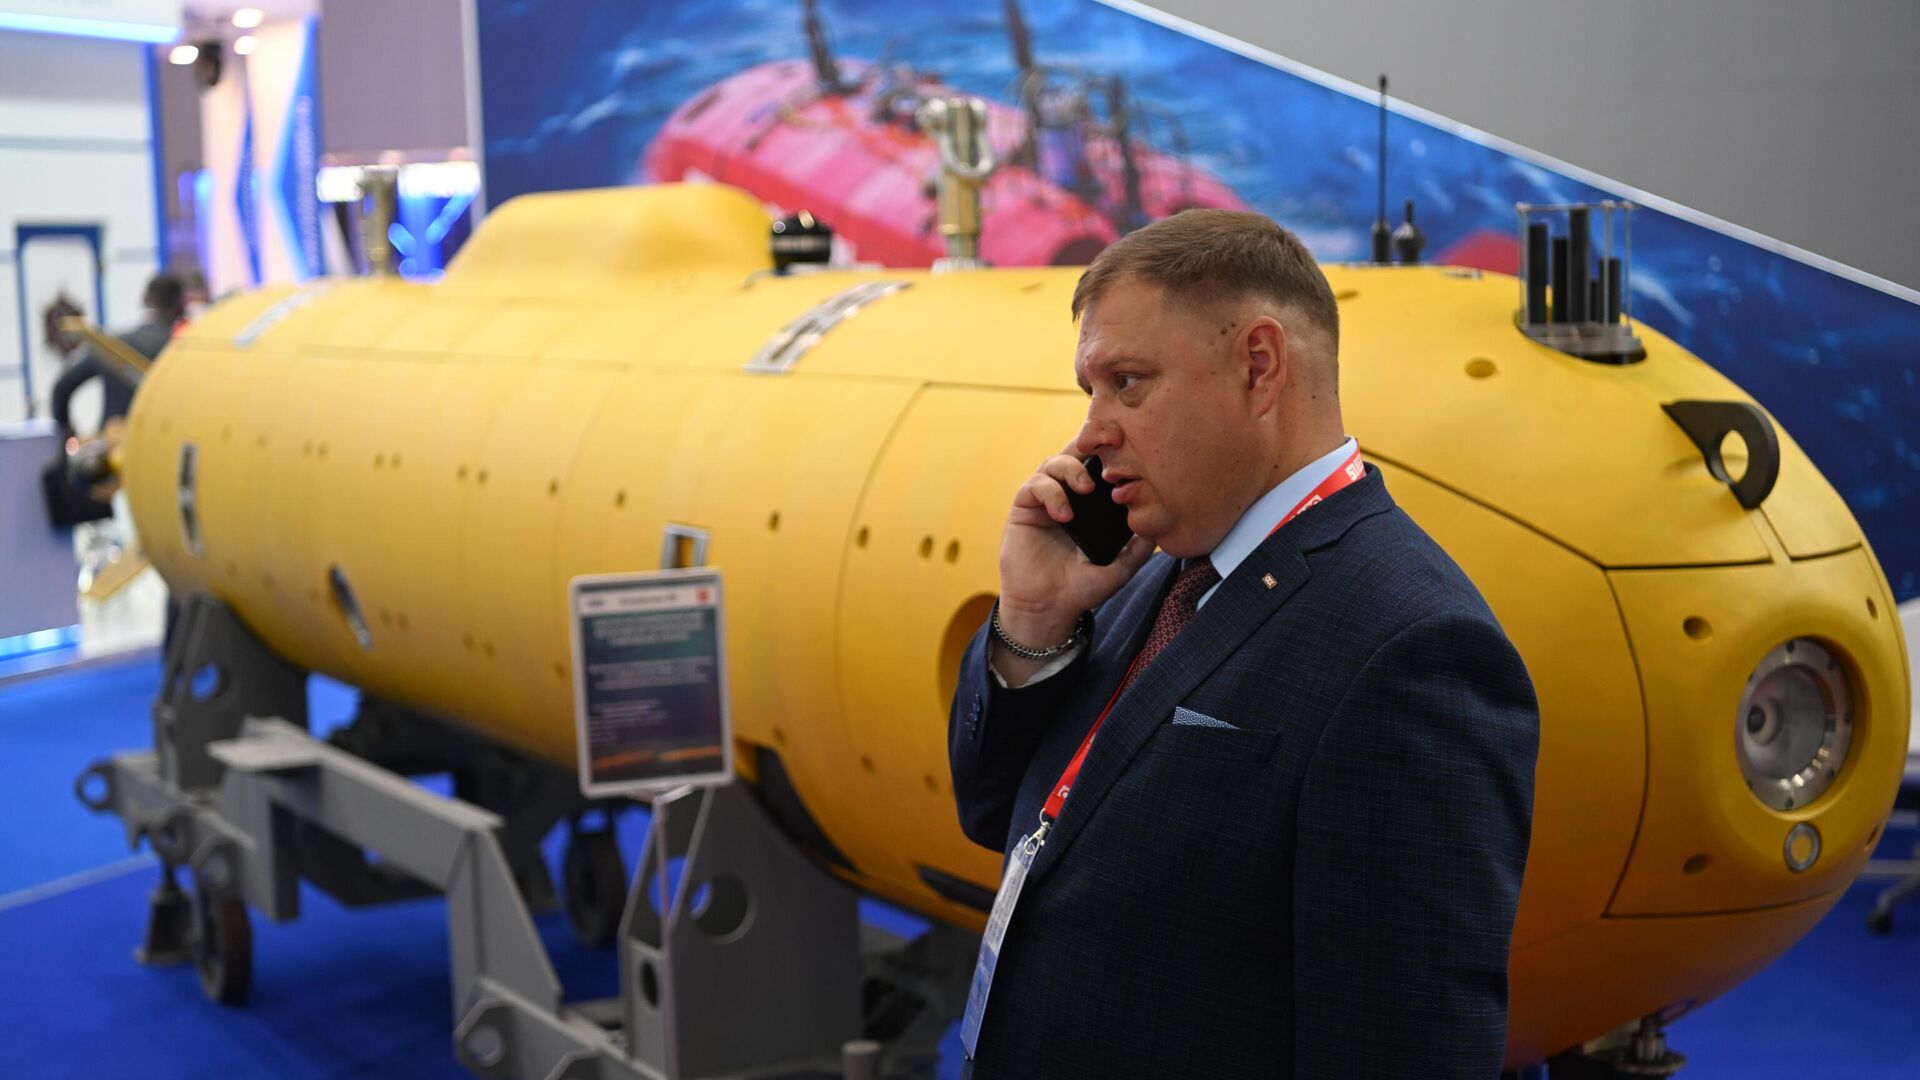 Посетитель разговаривает по телефону у модели подводной лодки на выставке в рамках Международного военно-технического форума Армия-2022 в Конгрессно-выставочном центре Патриот - Sputnik Азербайджан, 1920, 22.08.2022